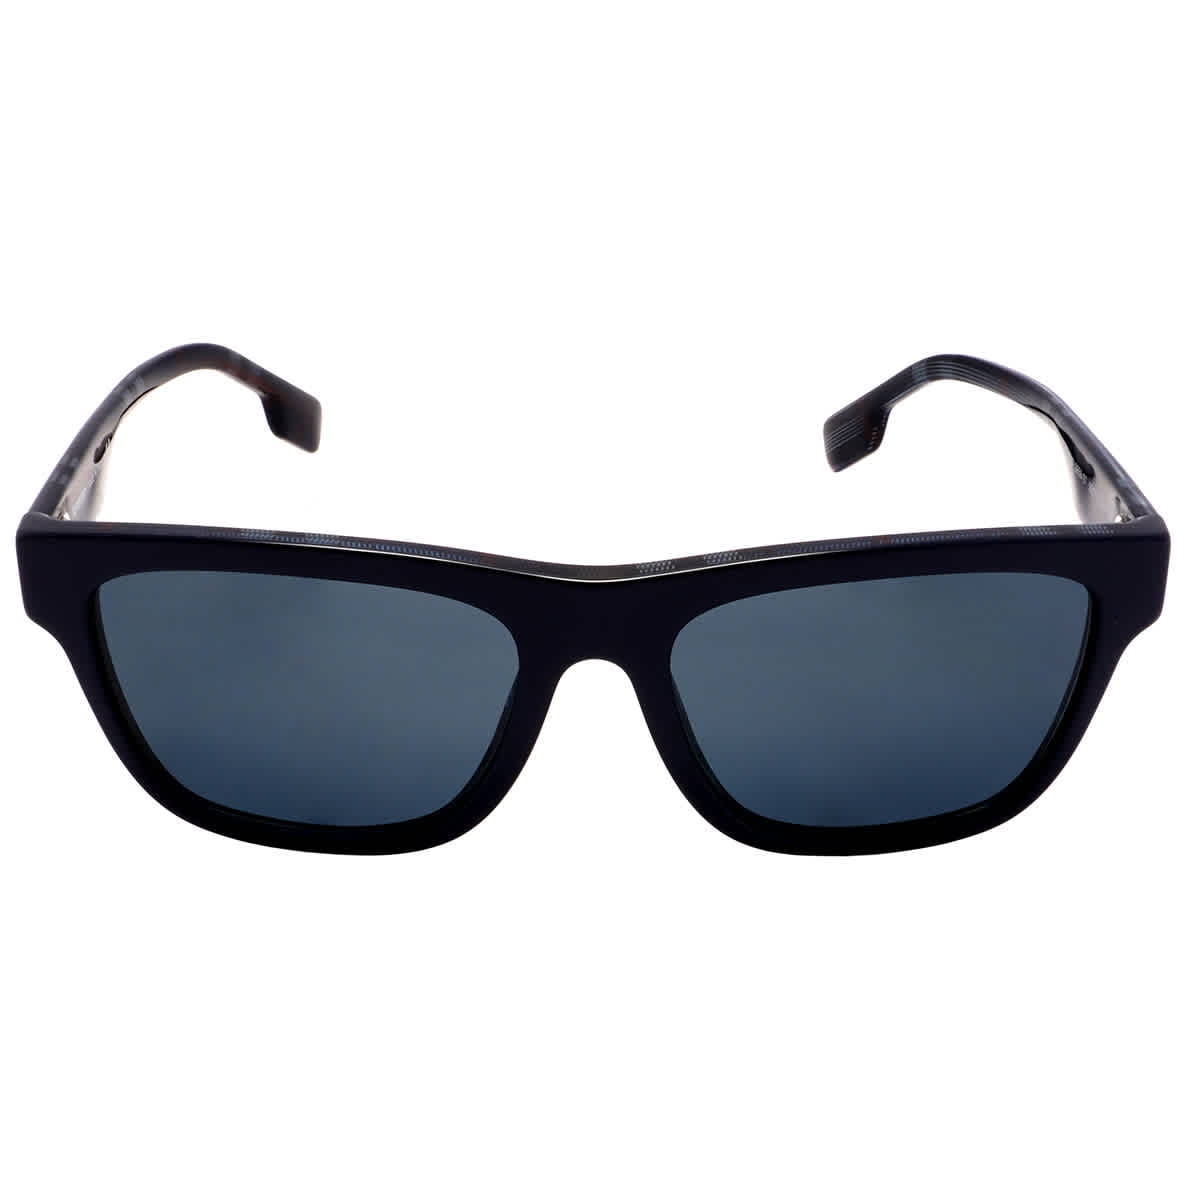 Burberry Dark Grey Square Men's Sunglasses BE4293 395987 56 - Walmart.com